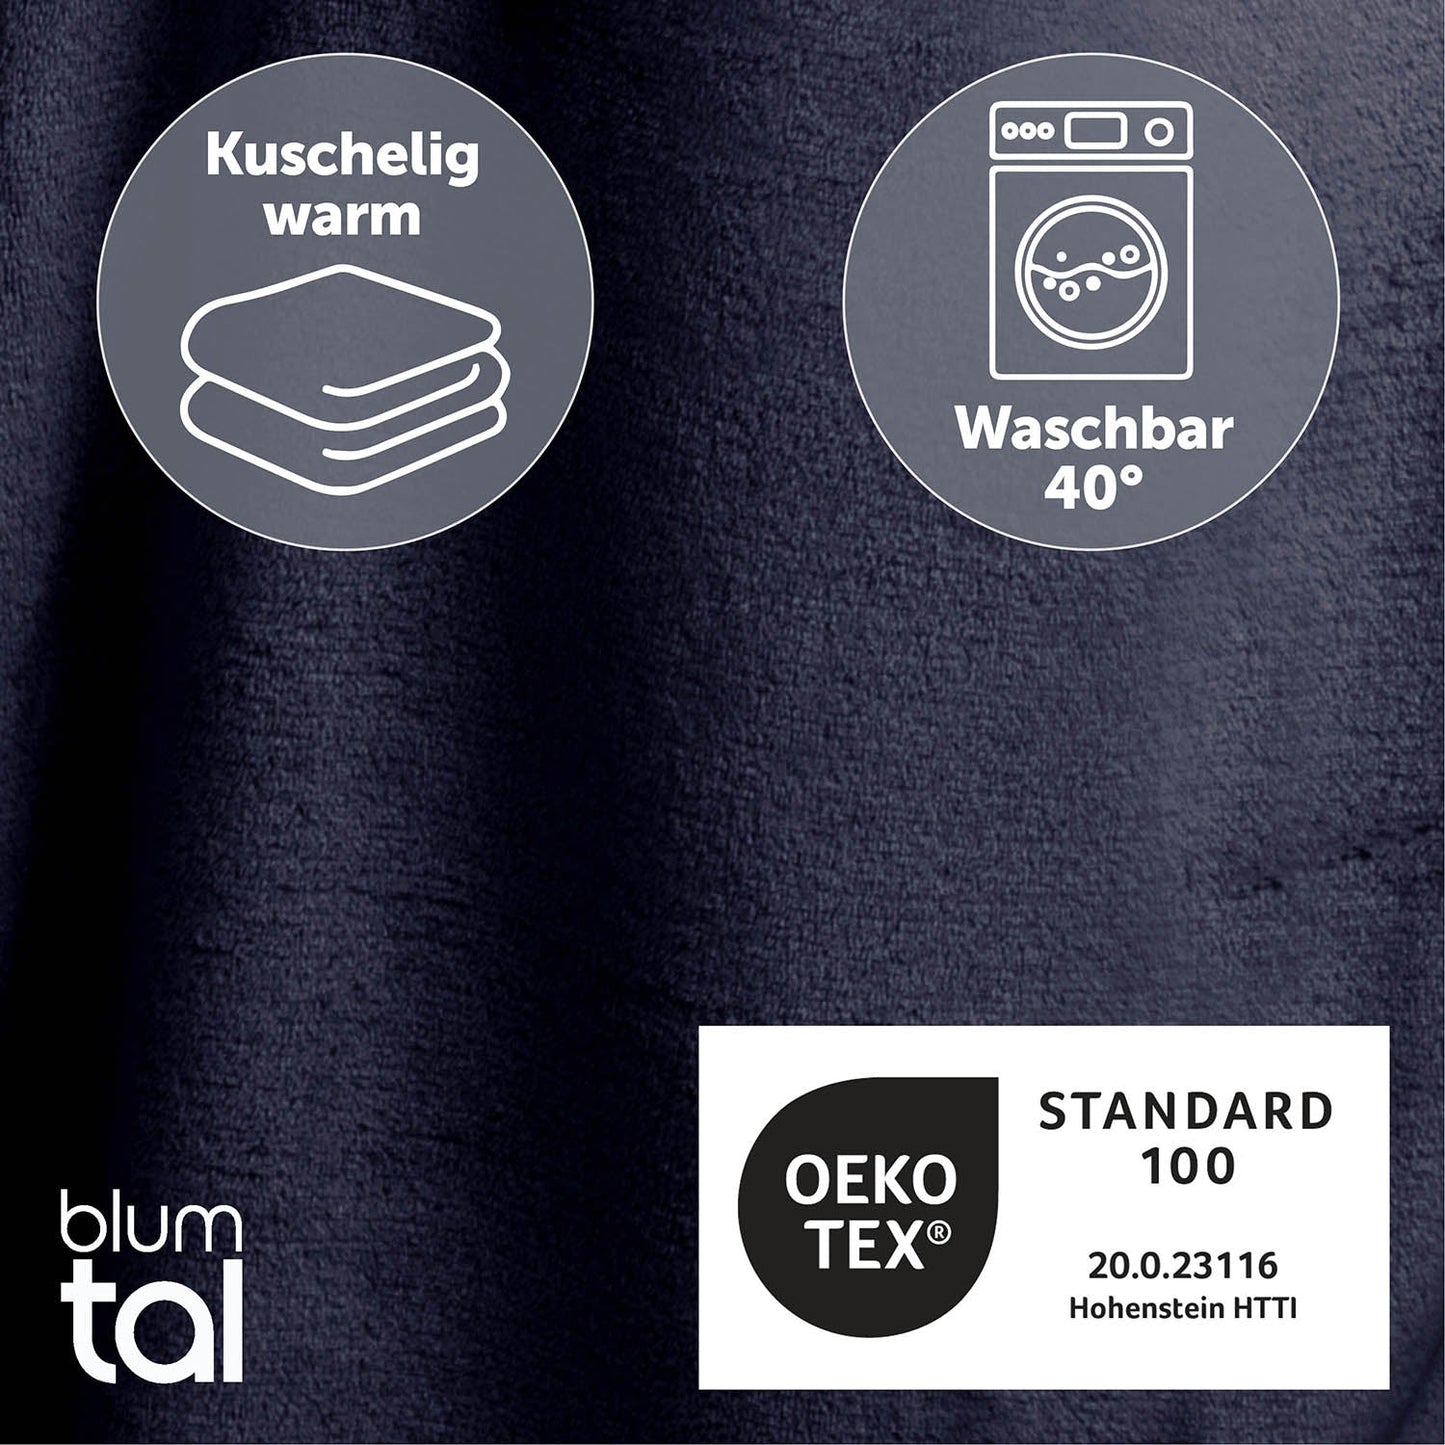 Detailansicht des dunkelblau flauschigen Stoffes mit Symbolen für Kuschelwärme und Waschbarkeit bei 40 Grad sowie OEKO-TEX Standard 100 Zertifizierung.